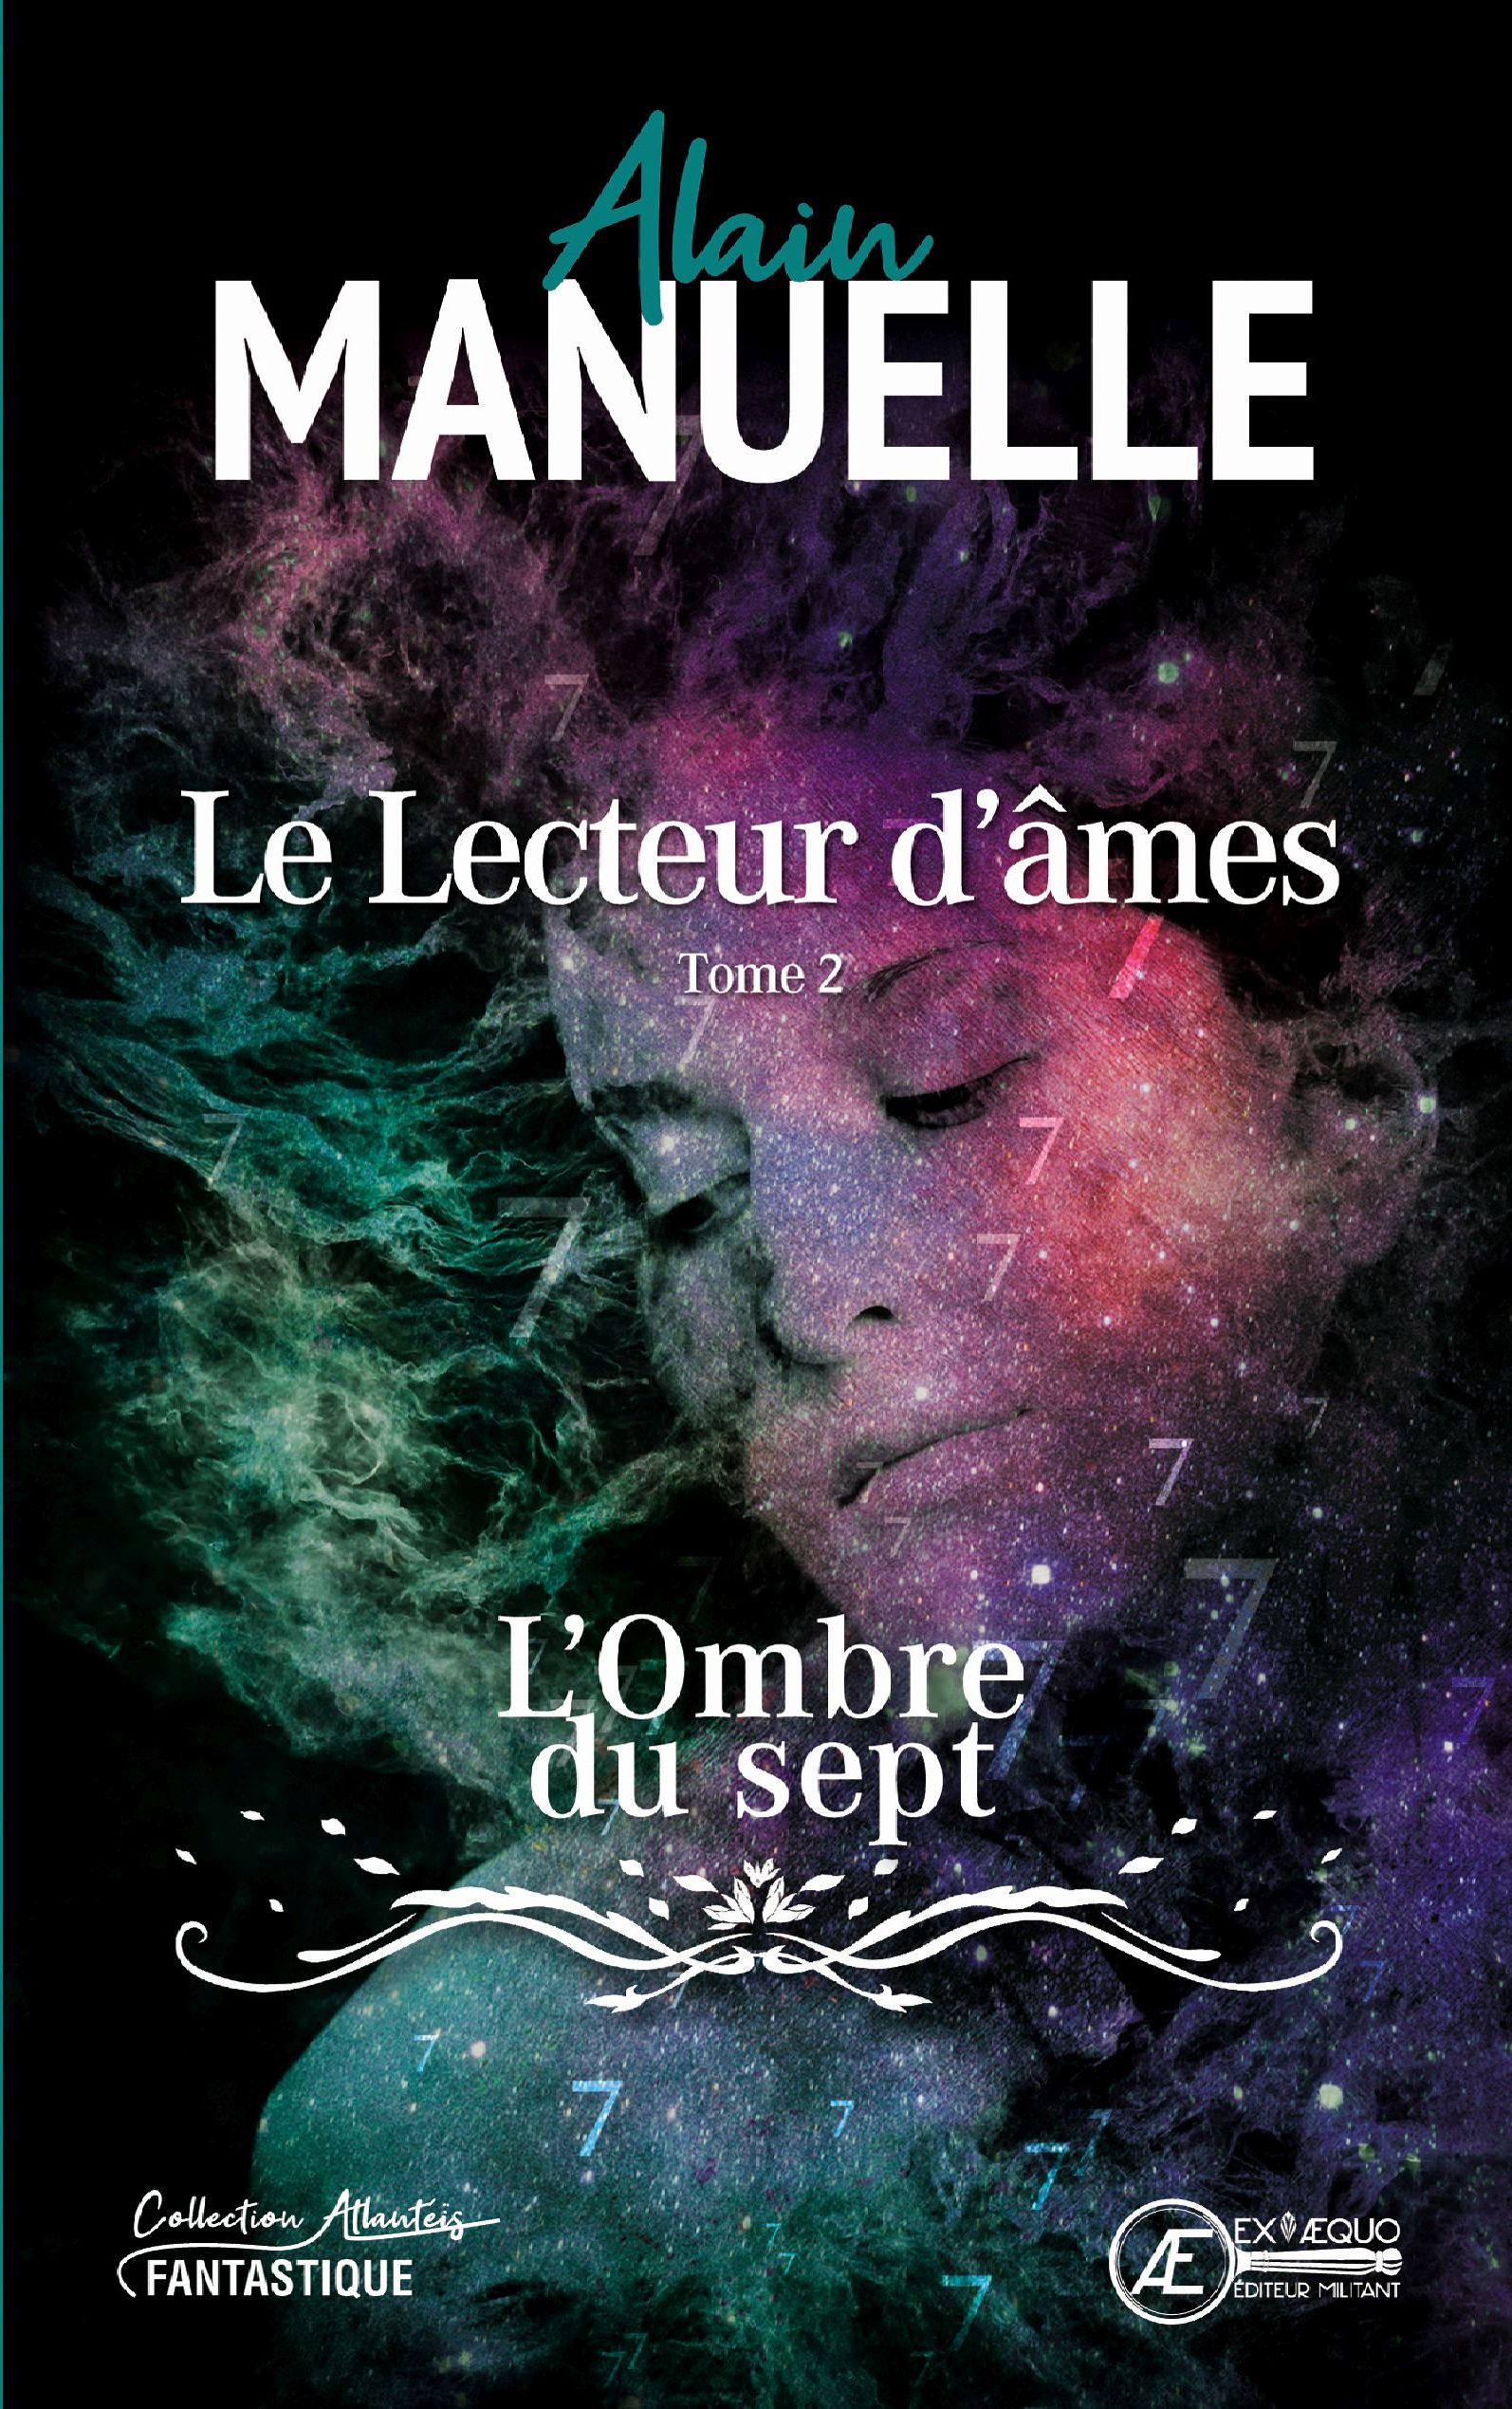 You are currently viewing Le Lecteur d’âmes Tome 2 – L’Ombre du sept 